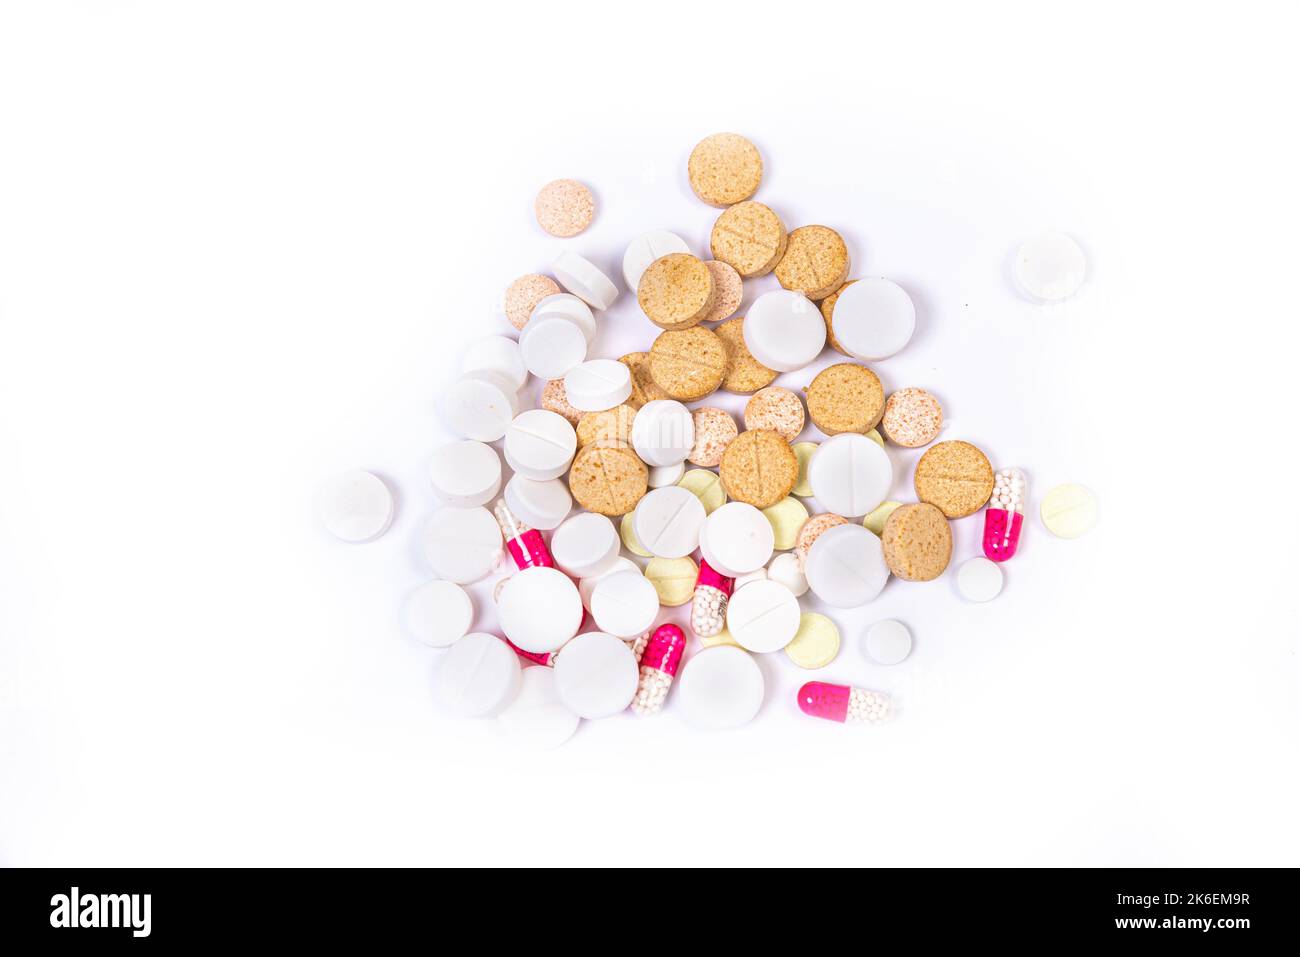 Médicaments pilules bordure arrière-plan. Tablettes et capsules colorées. Pile longue de pilules assorties formant une bordure Banque D'Images